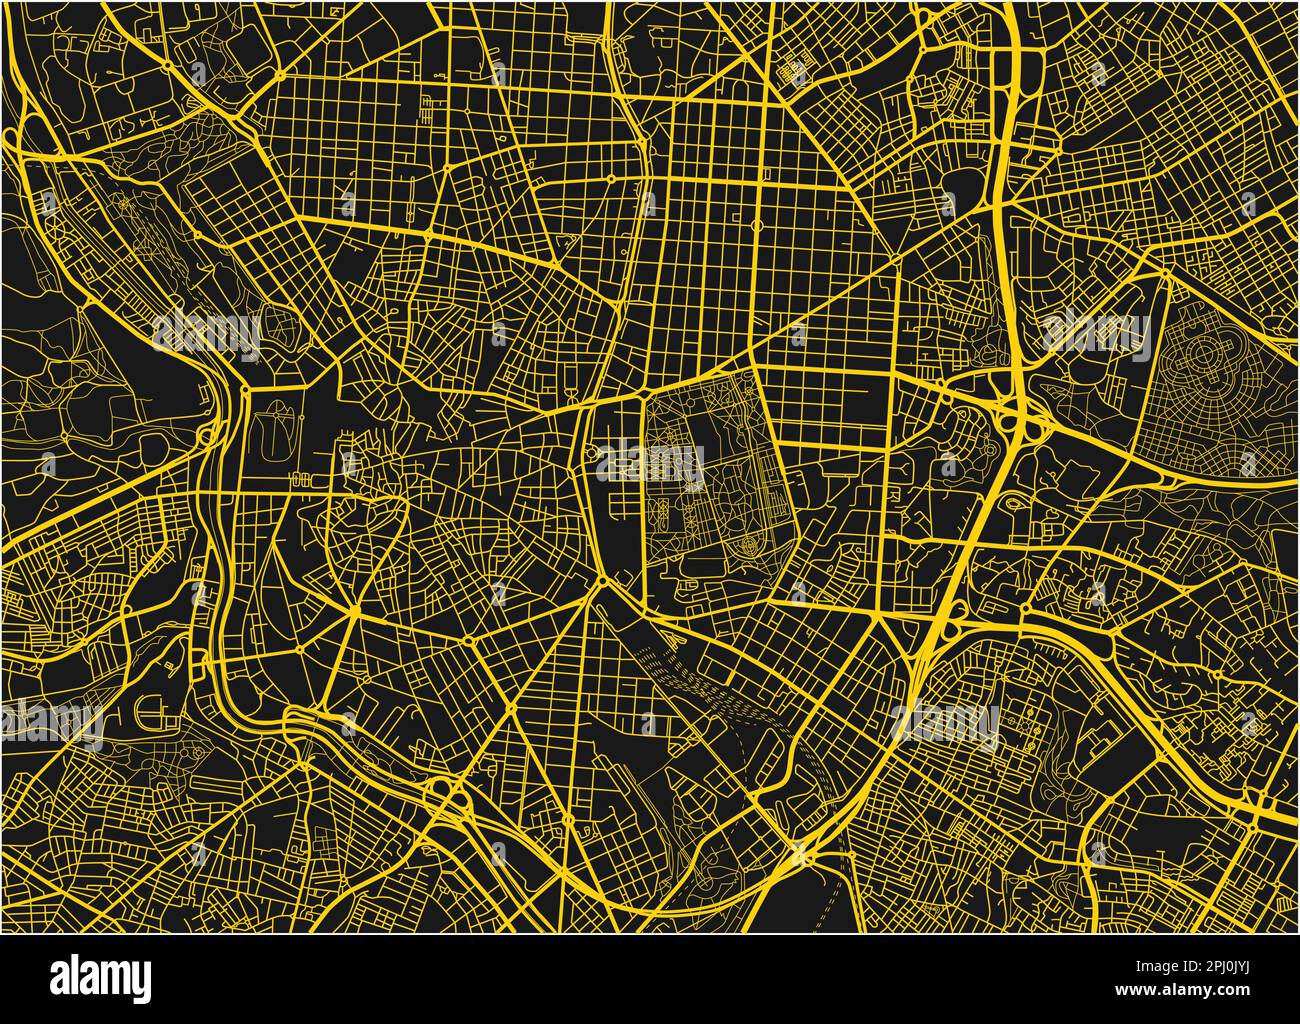 Mappa vettoriale nera e gialla della città di Madrid con strati separati ben organizzati. Illustrazione Vettoriale